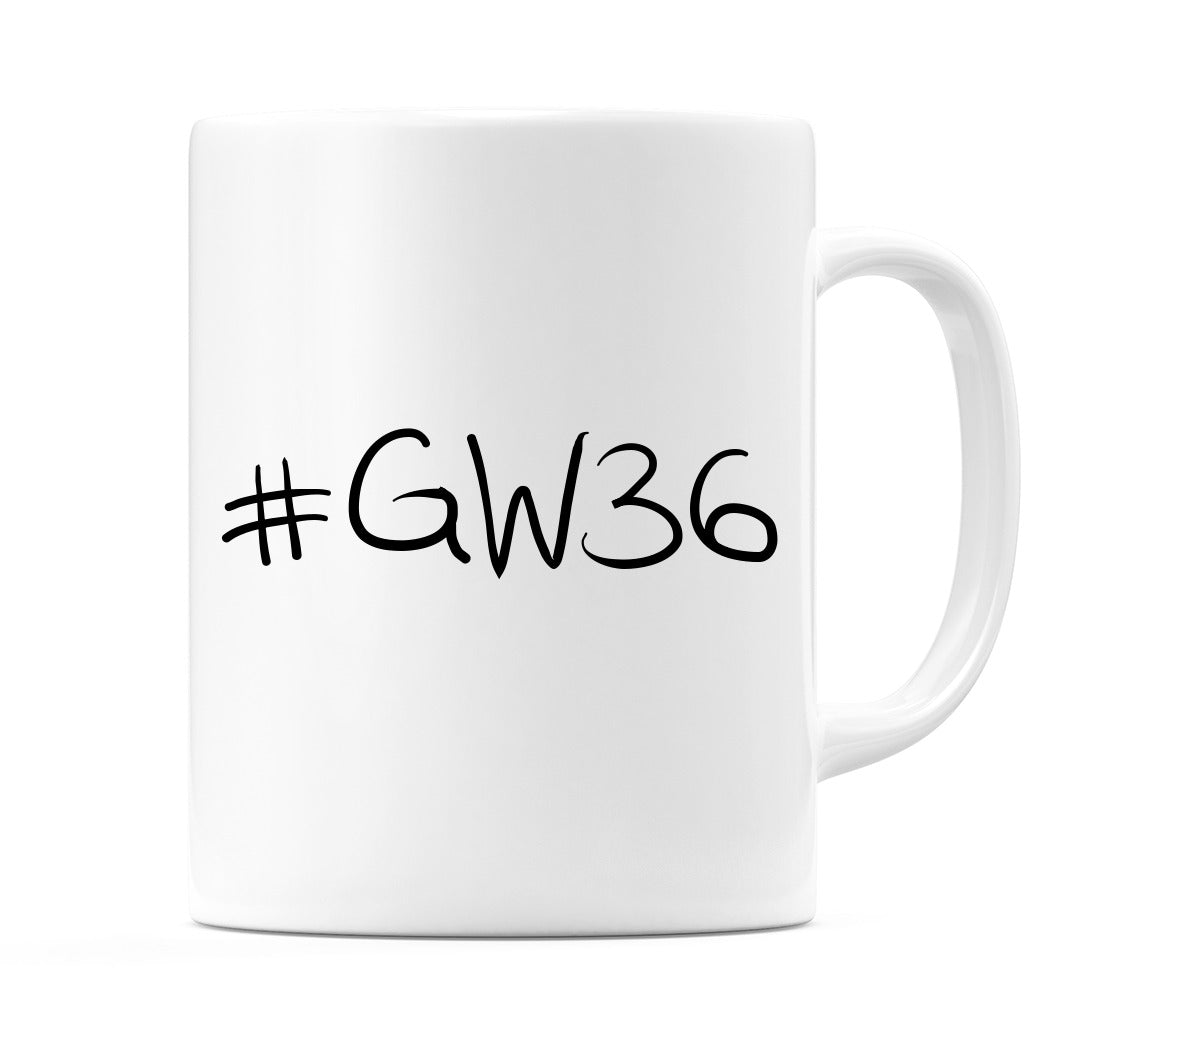 #GW36 Mug